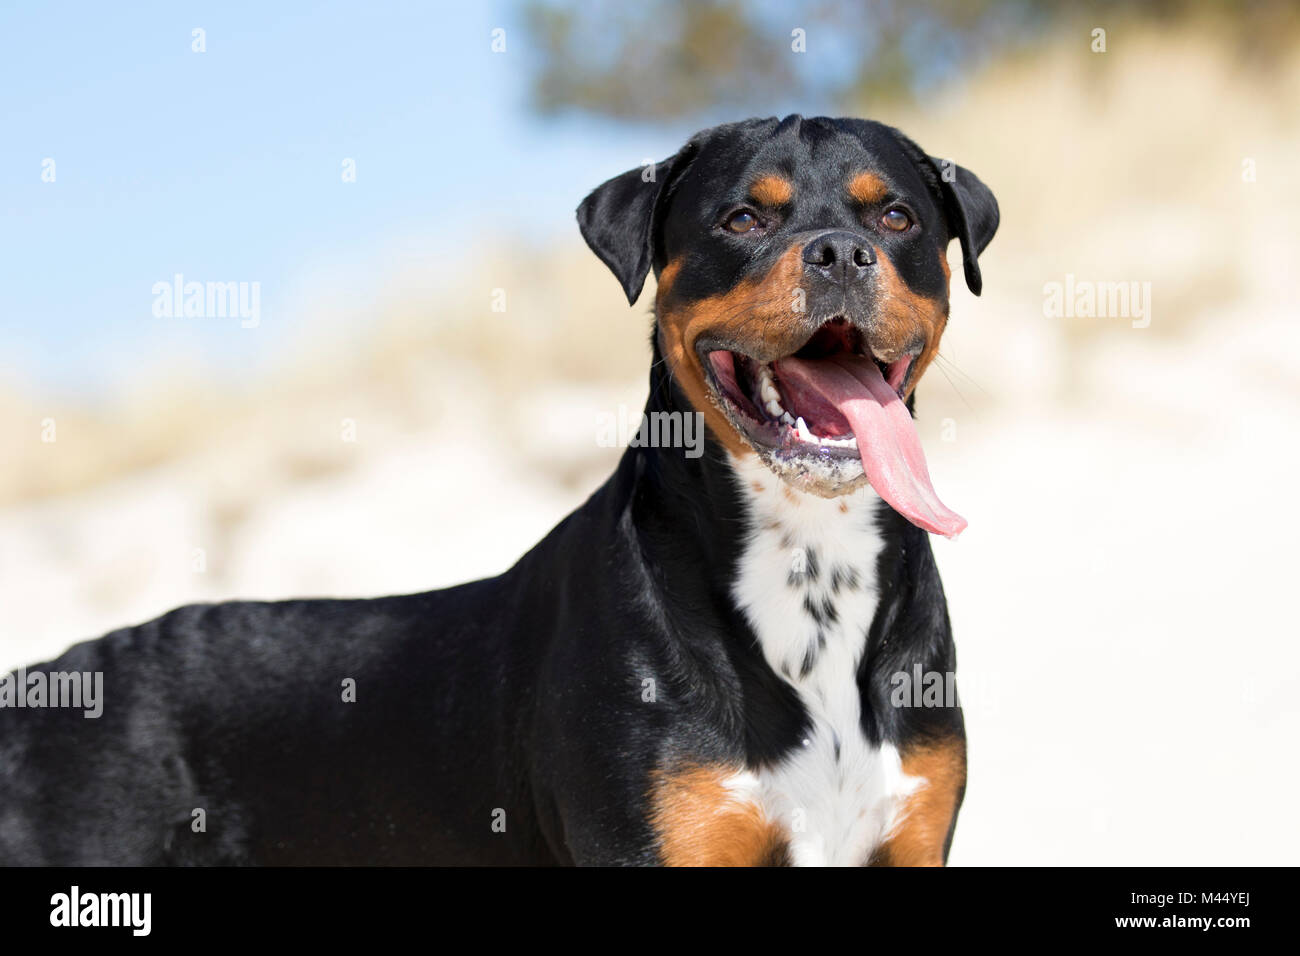 Chien de race mixte (x Rottweiler Staffordshire Bull Terrier). Portrait d'adulte sur une plage. Pays-bas Banque D'Images